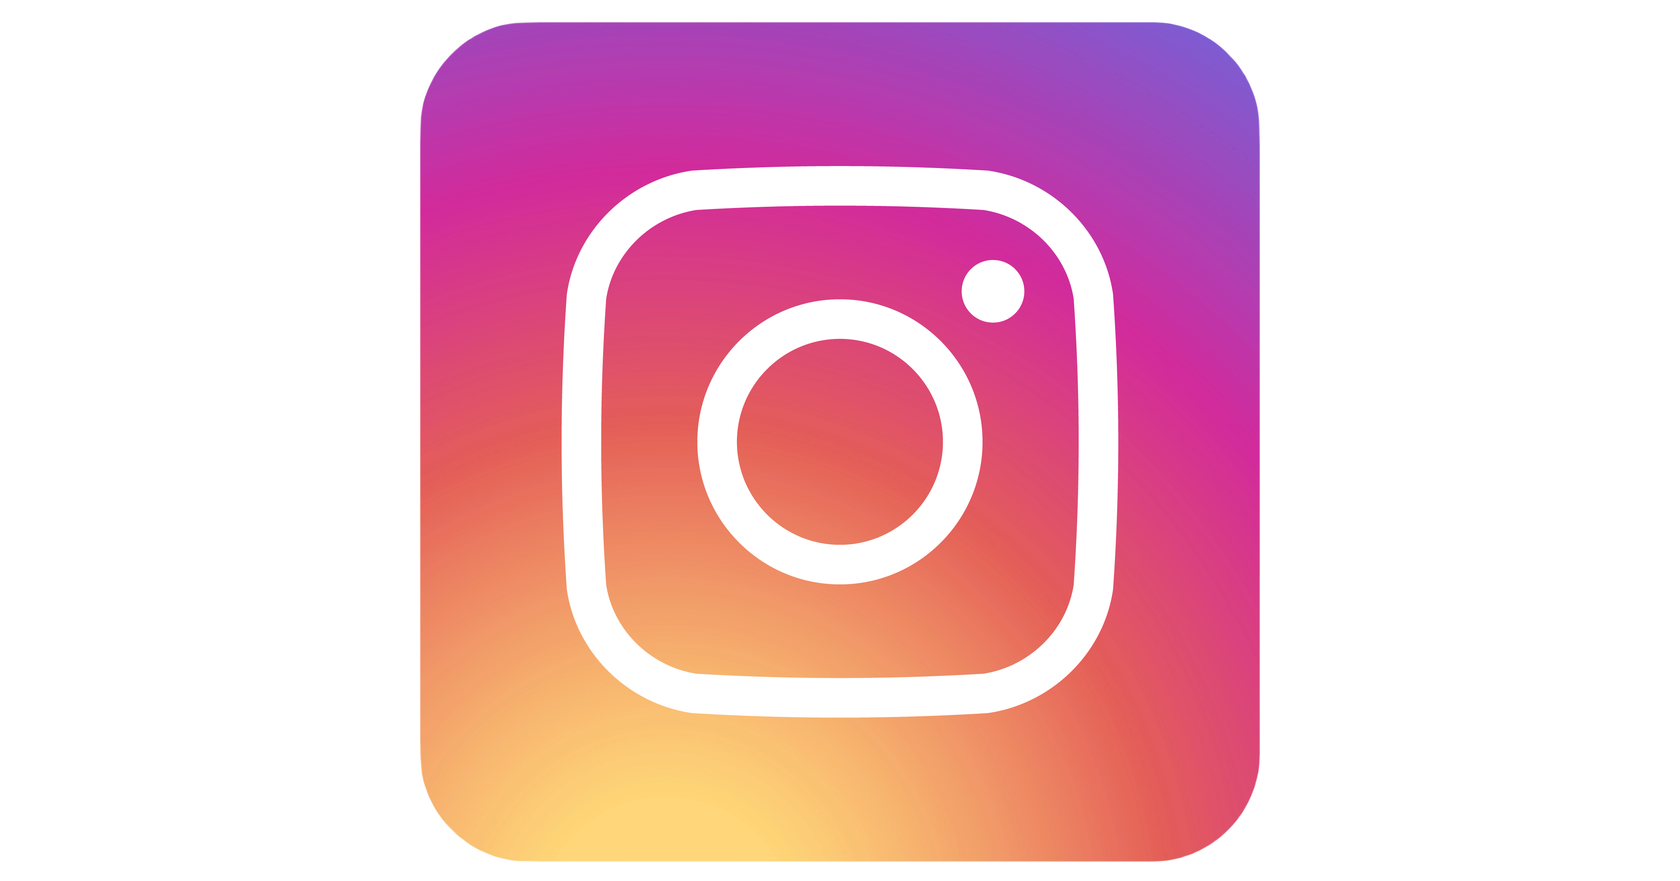 Логотип Instagram. Значок Инстаграм. Прозрачный значок Инстаграм. Инст логотип на прозрачном фоне. Прозрачный фон в инстаграм